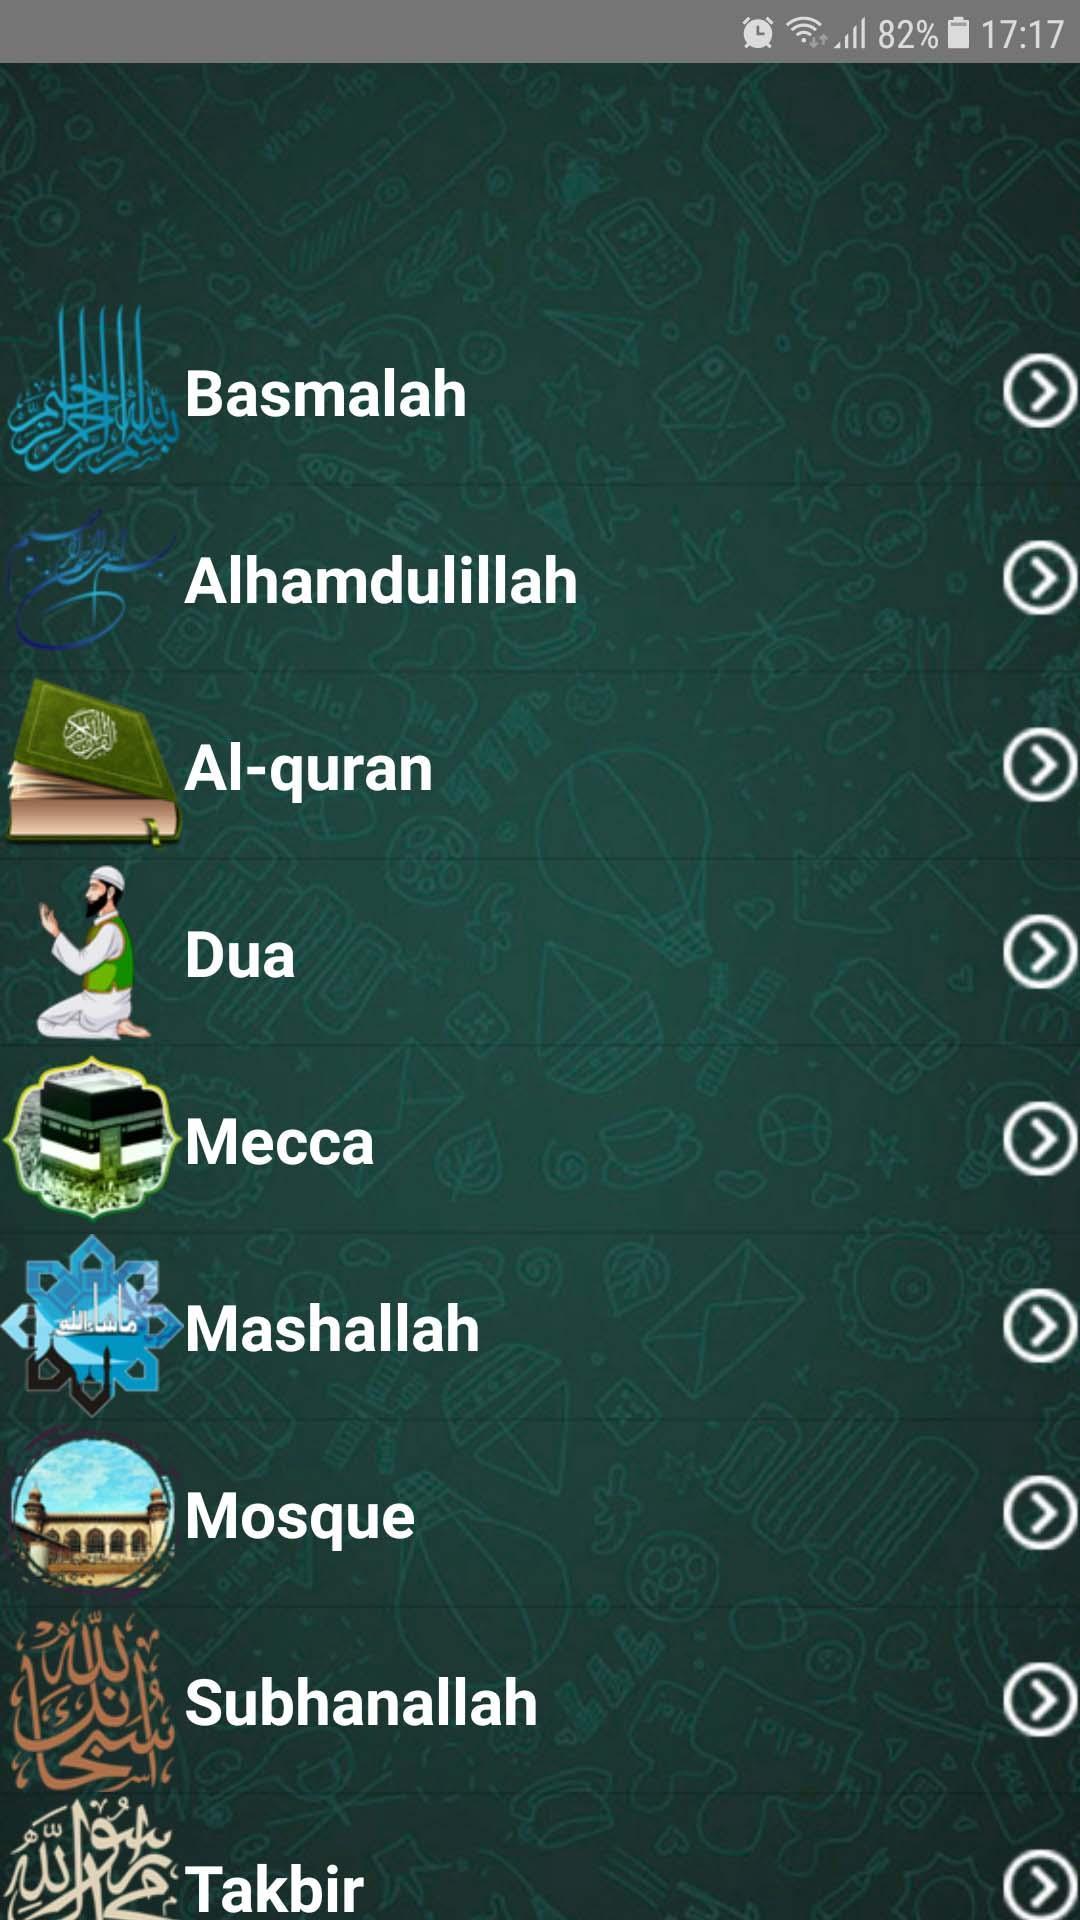 Sticker Islami Untuk Wa Terbaru For Android Apk Download